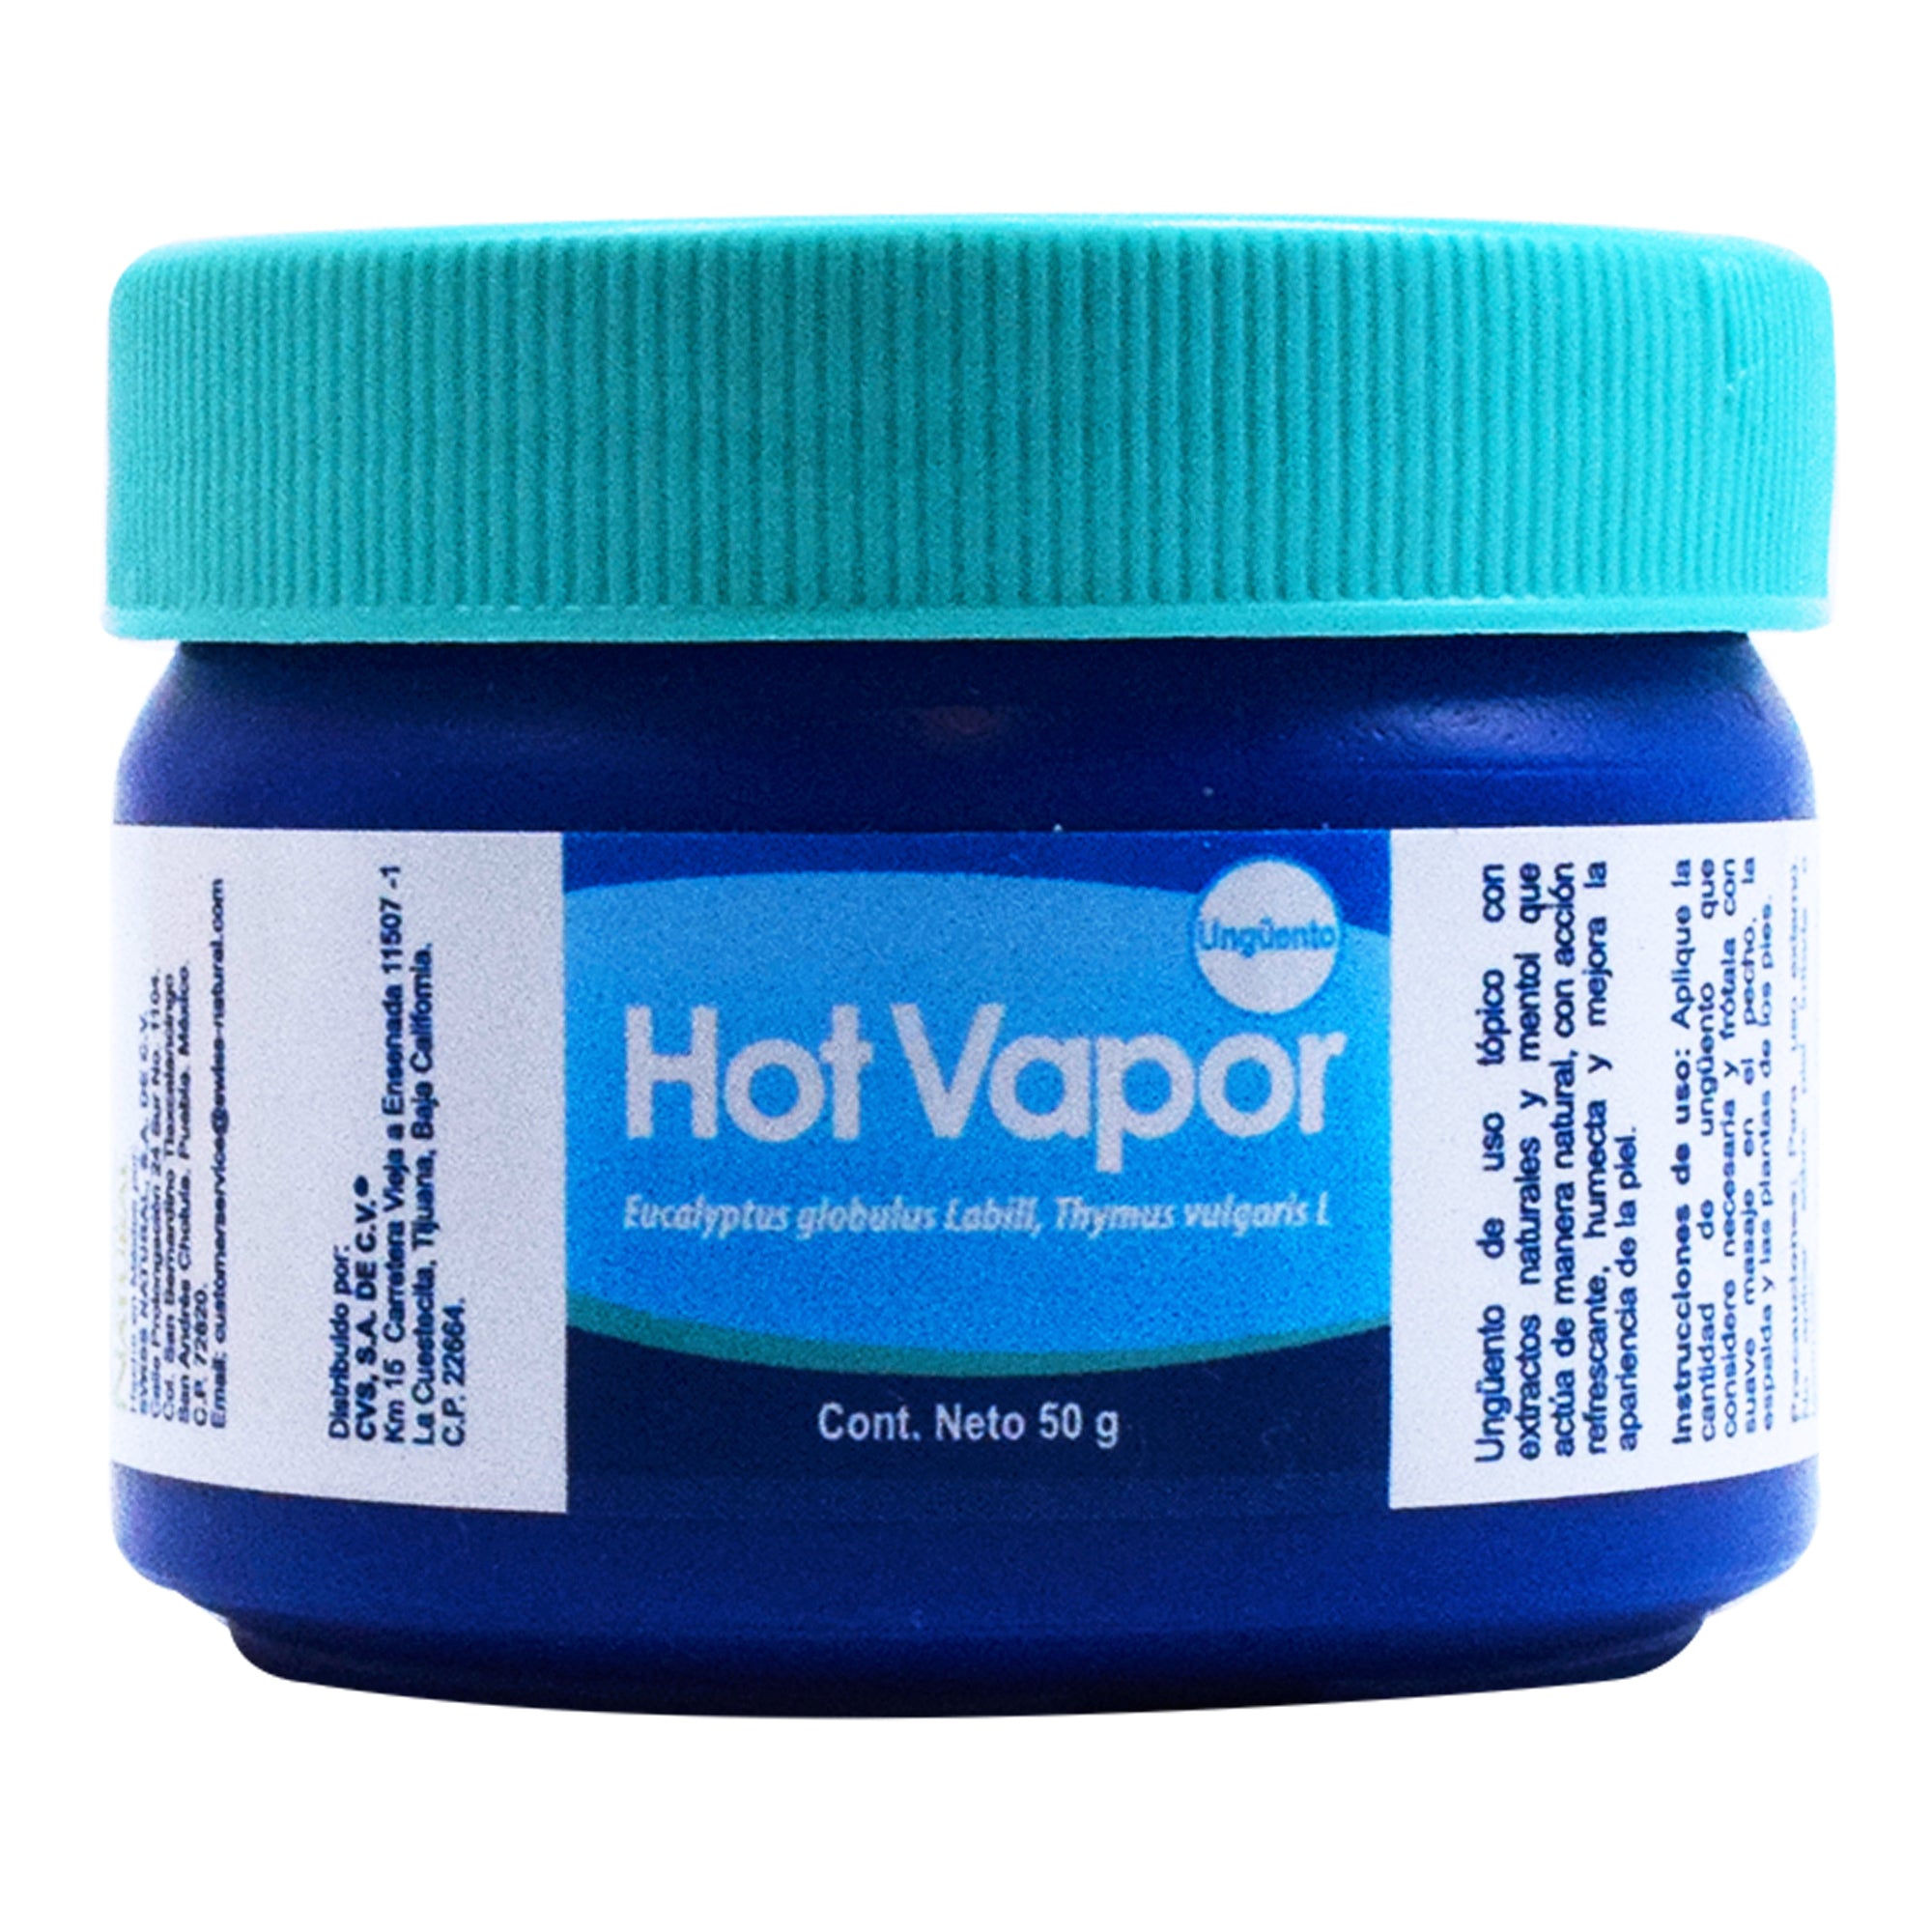 Hot vapor 50 g